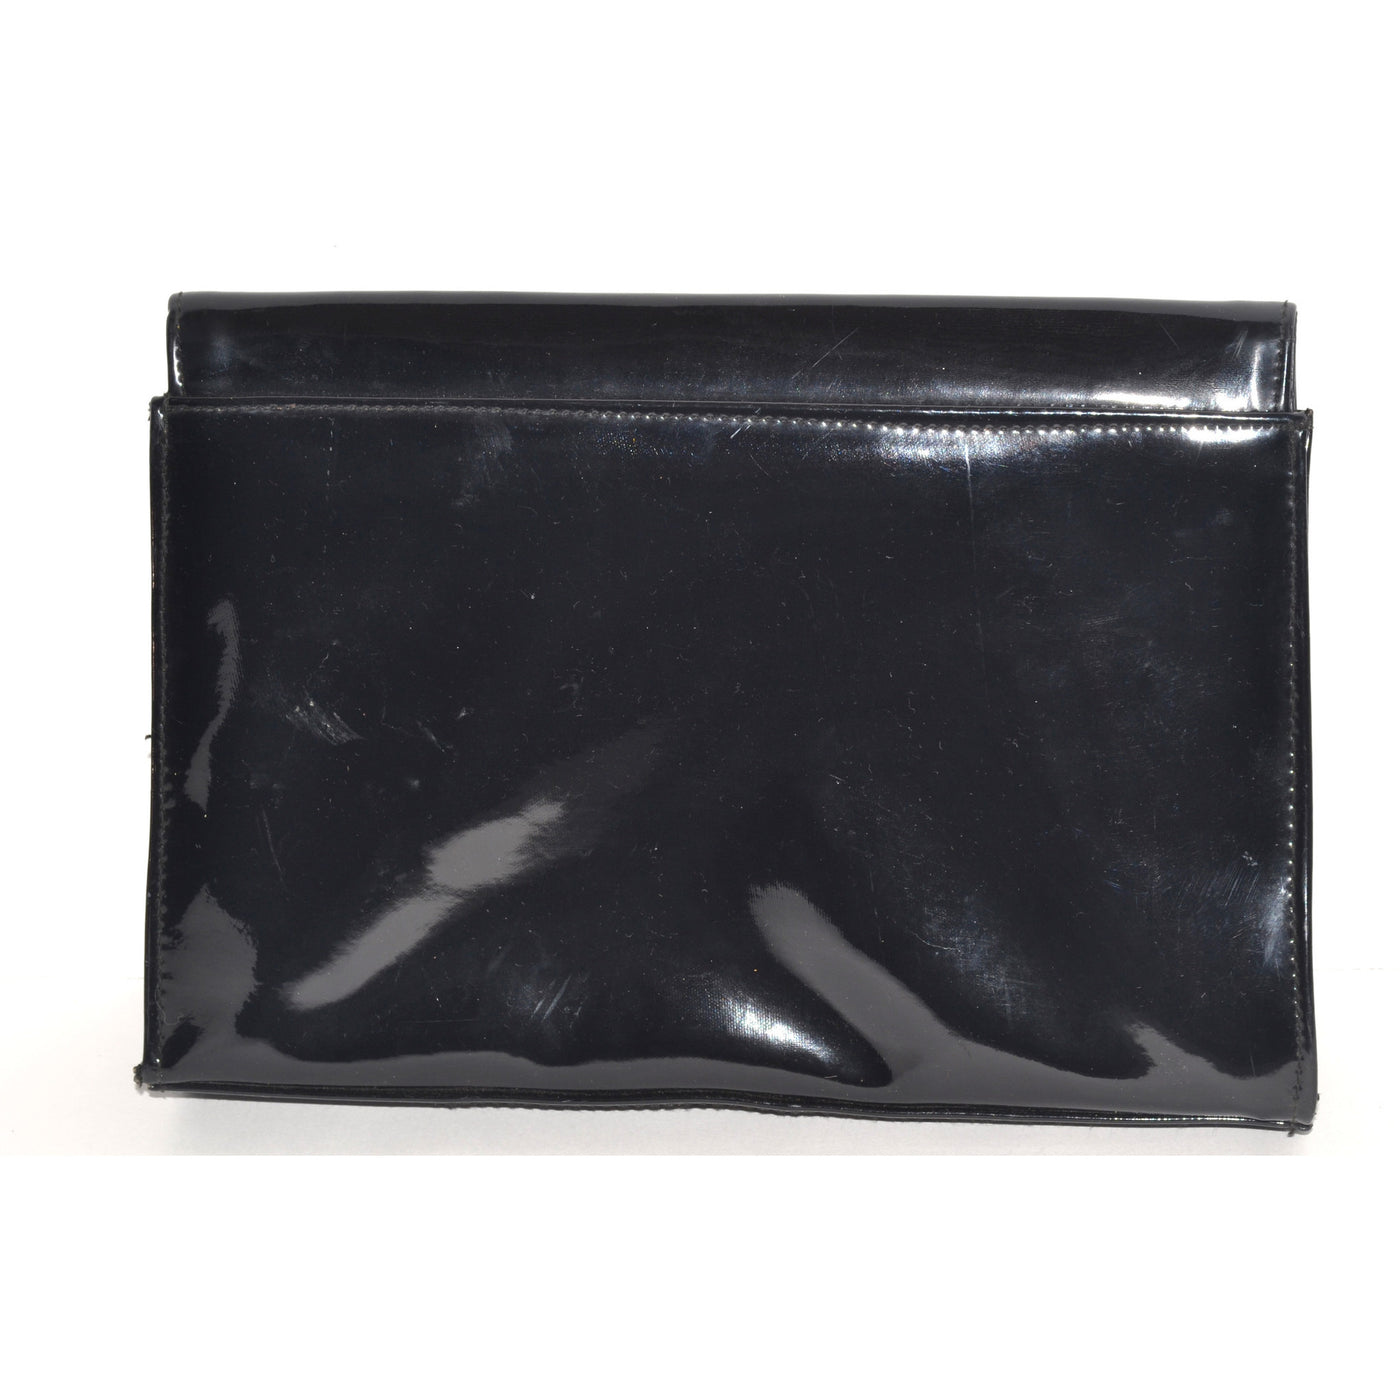 Vintage Black Patent Leather Clutch Purse